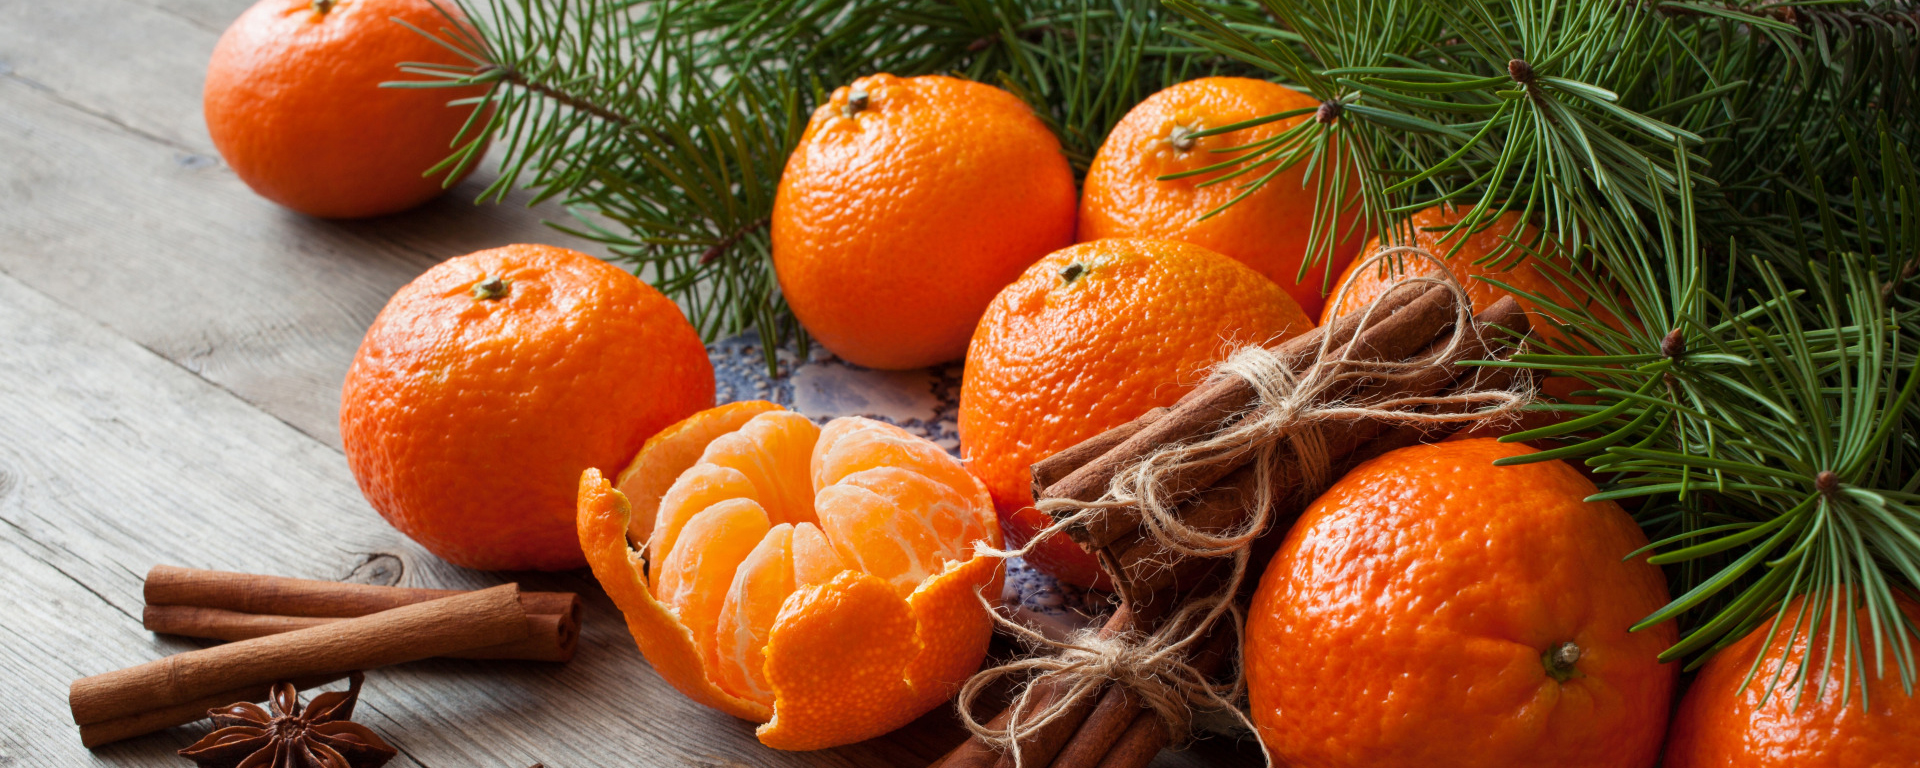 Мандарин мороз. Апельсин и корица. Мандарины новый год. Мандарины и корица. Новый год мандарины апельсины.